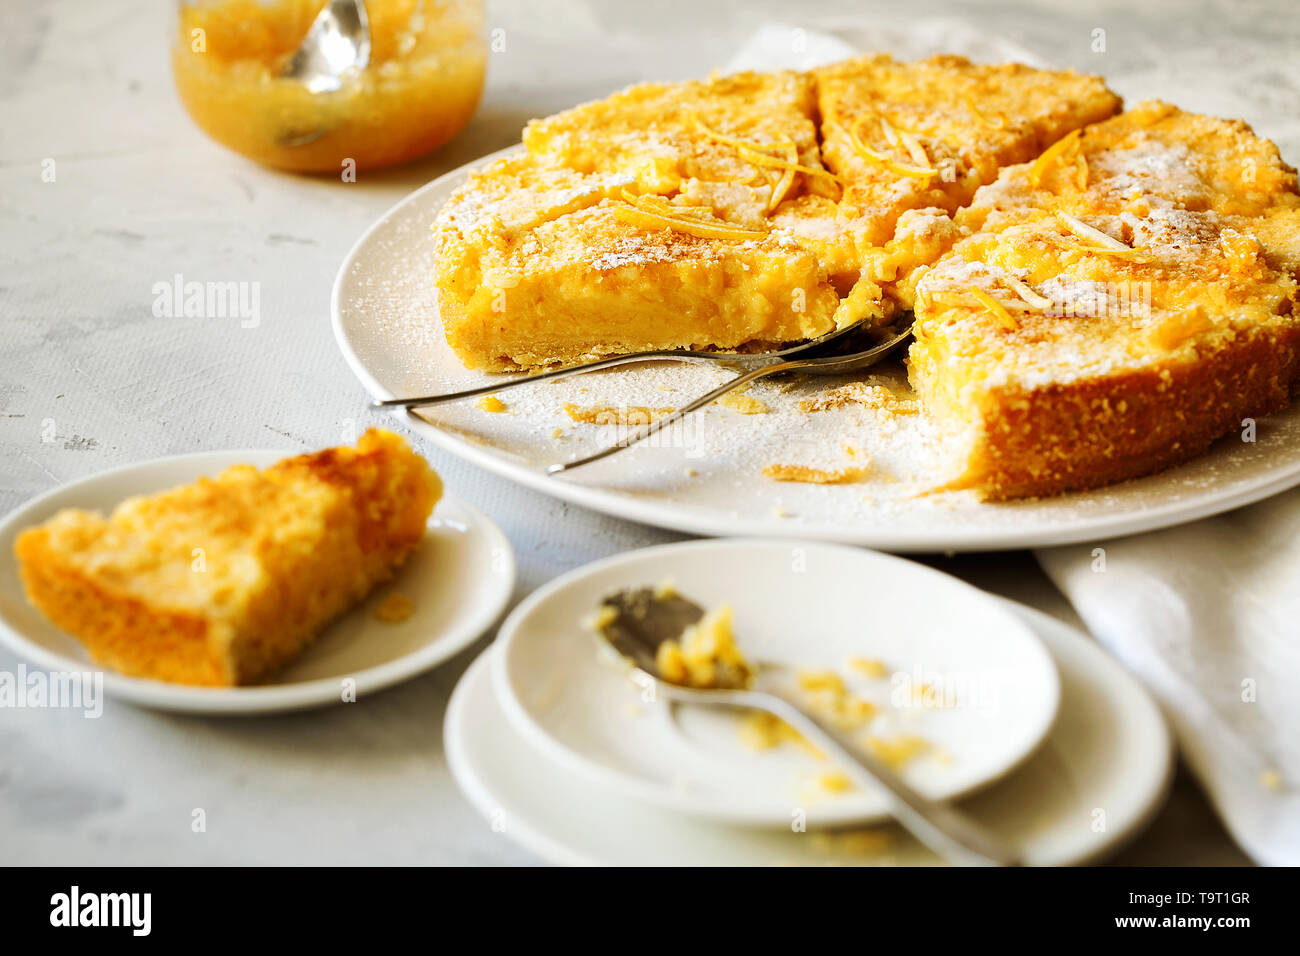 Citron gâteau traditionnel anglais pudding avec citron et du sucre en poudre sur une assiette blanche sur un fond clair.pâtisseries fruits maison Banque D'Images